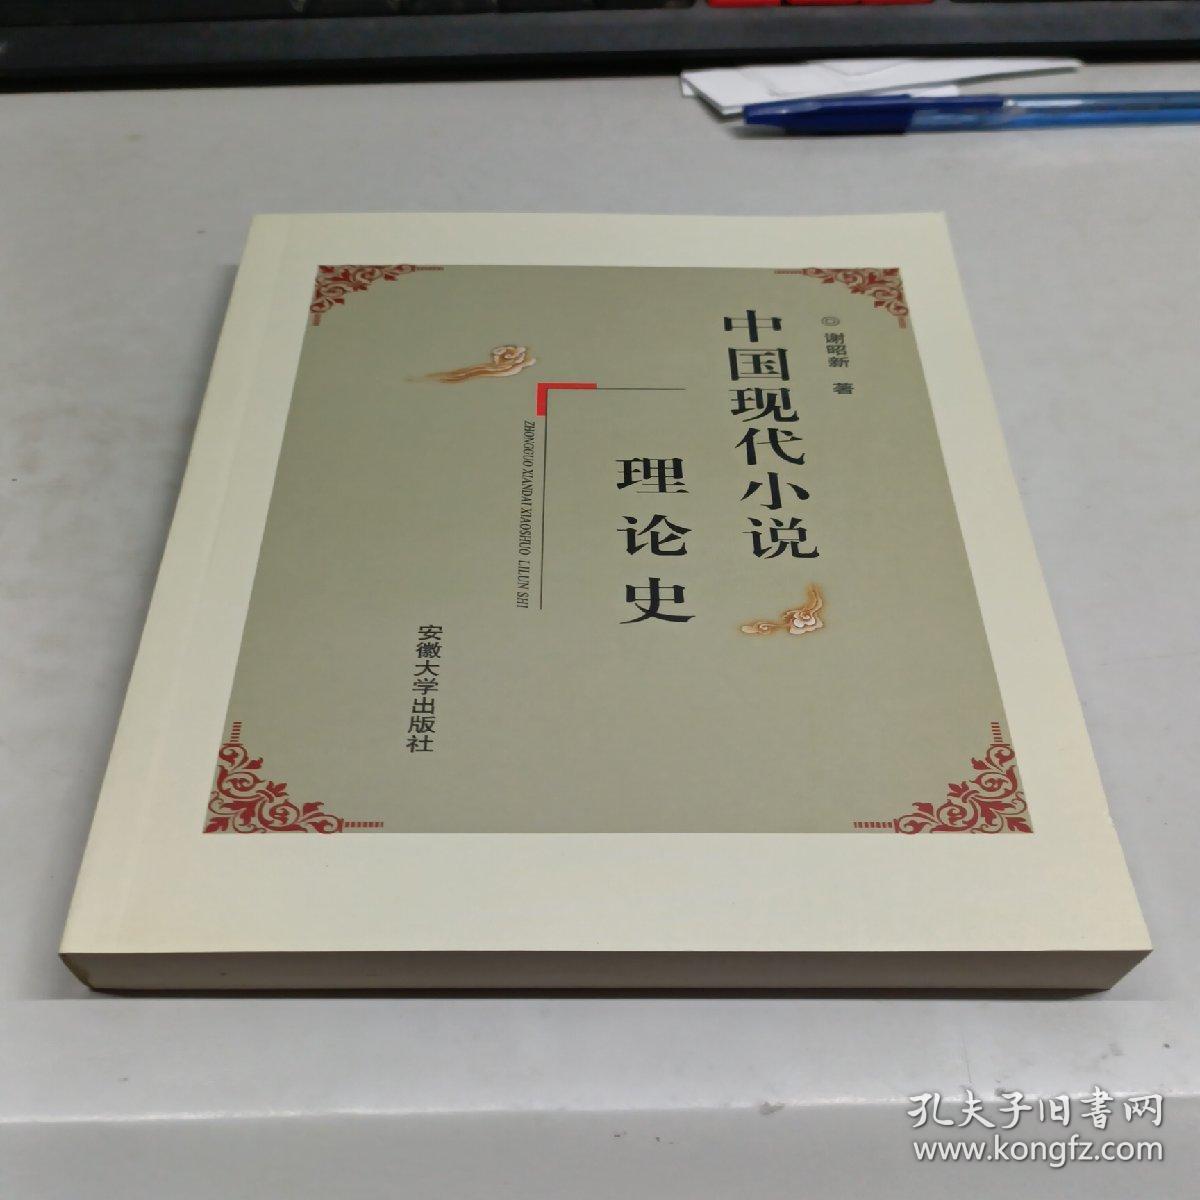 中国现代小说理论史